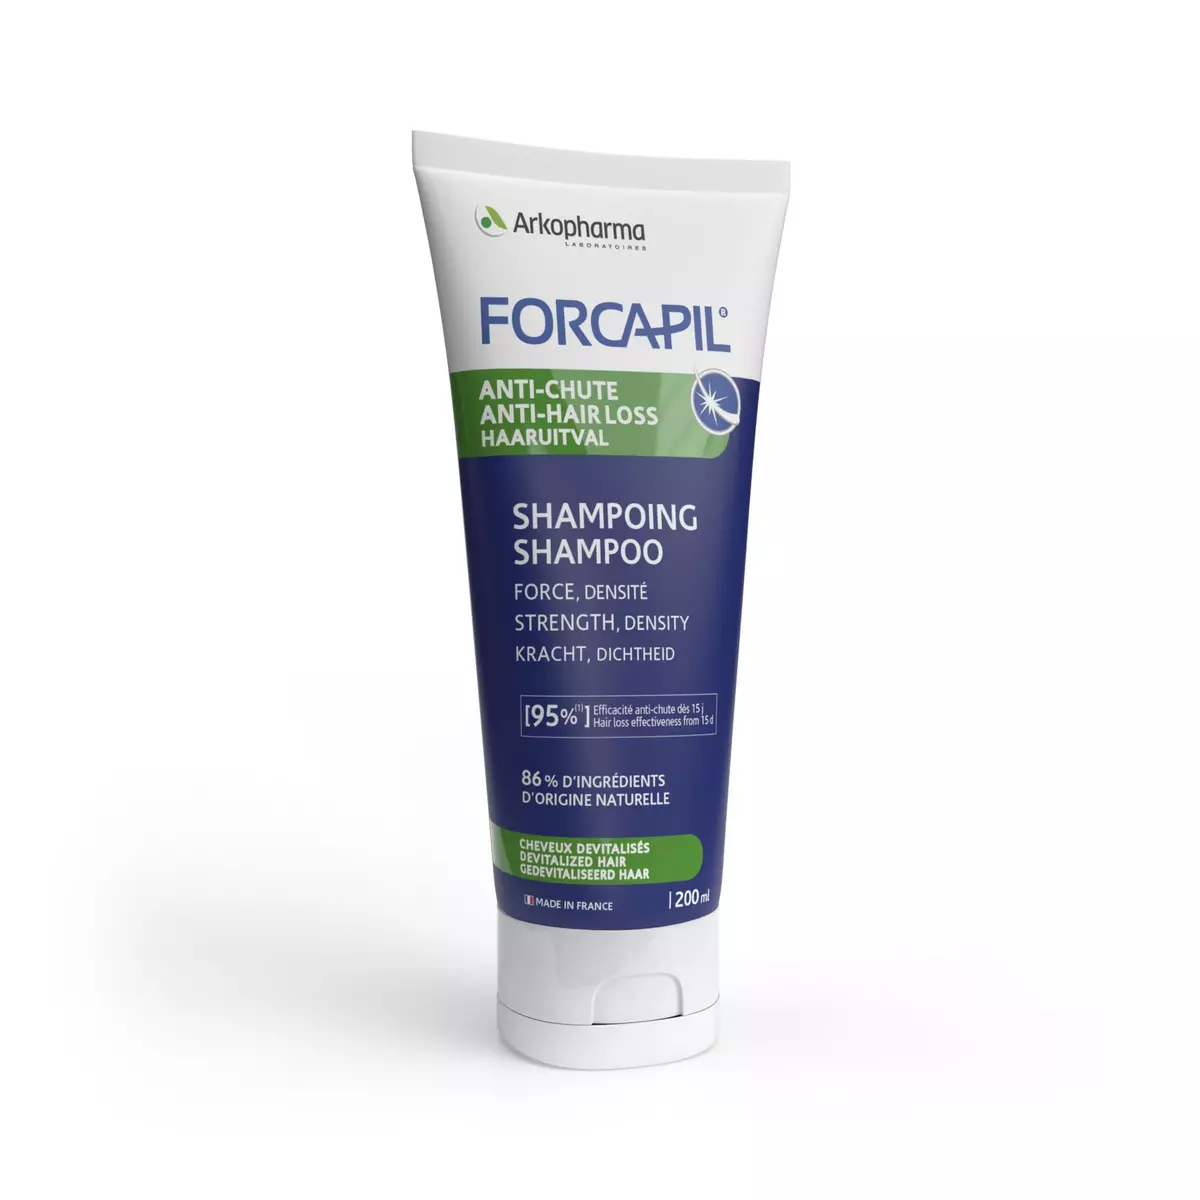 ARKOPHARMA Forcapil shampooing anti-chute pour cheveux devitalisés 200ml